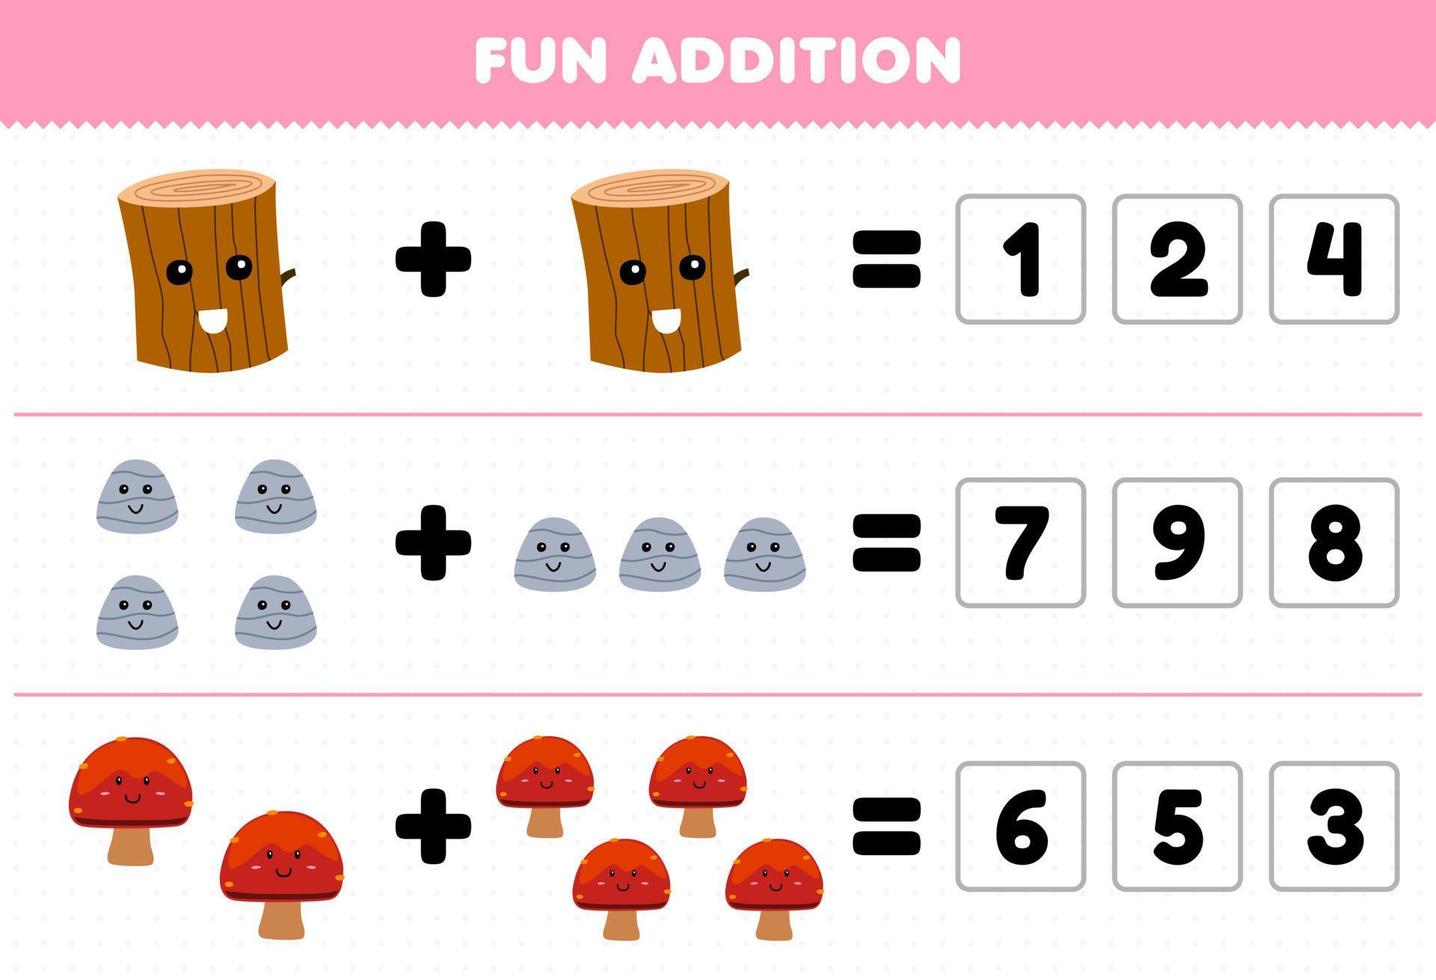 jeu éducatif pour les enfants ajout amusant en devinant le nombre correct de dessin animé mignon bois bûche pierre champignon feuille de travail nature imprimable vecteur